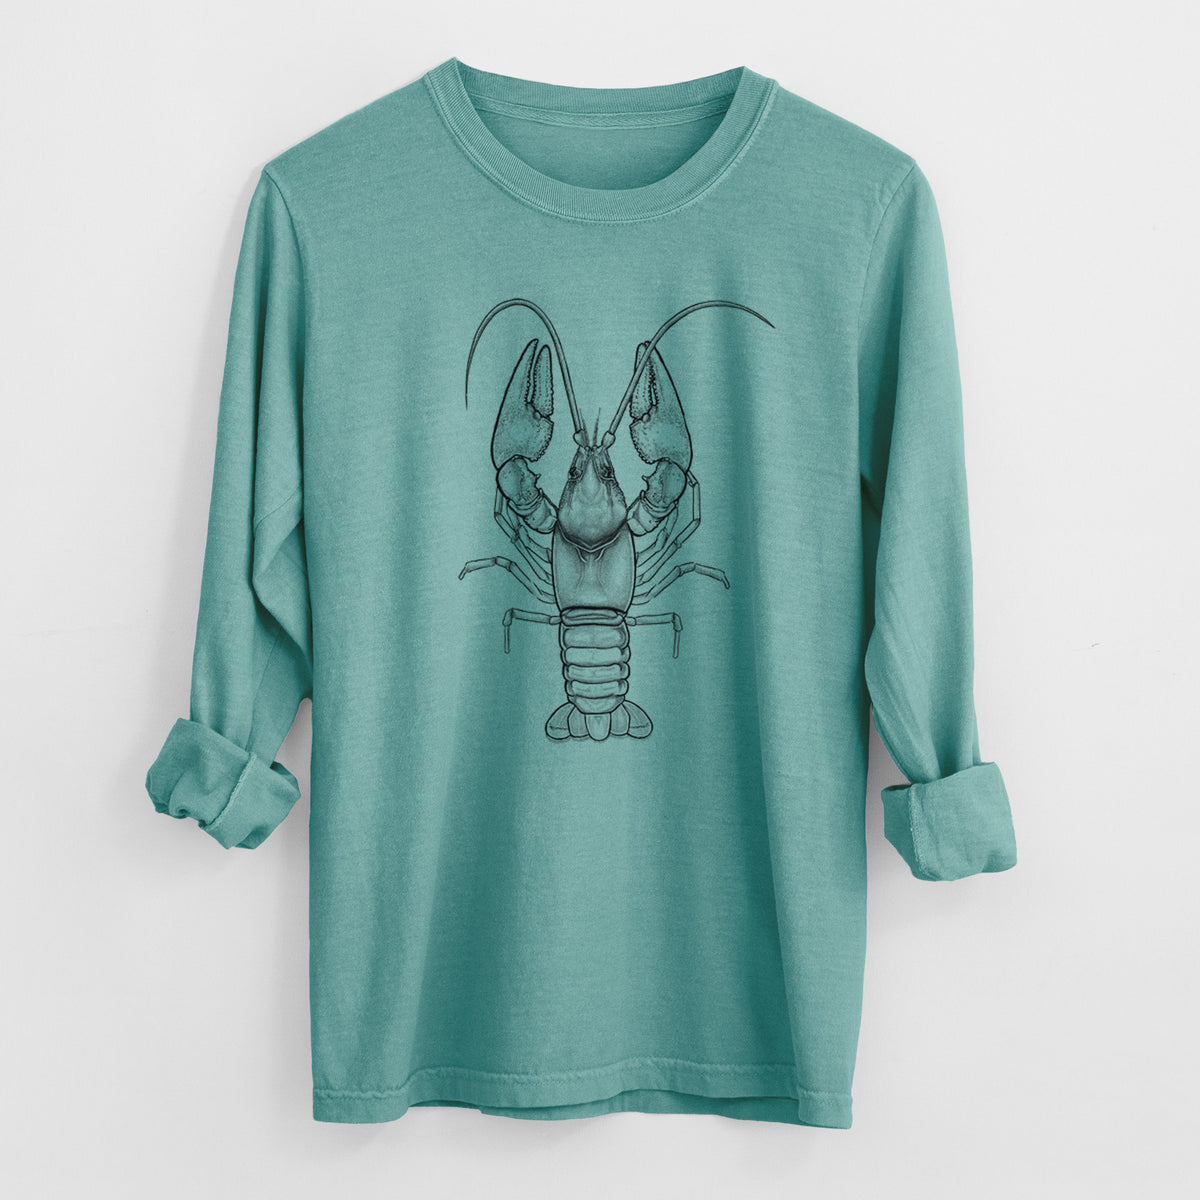 Guyandotte River Crayfish - Cambarus veteranus - Heavyweight 100% Cotton Long Sleeve